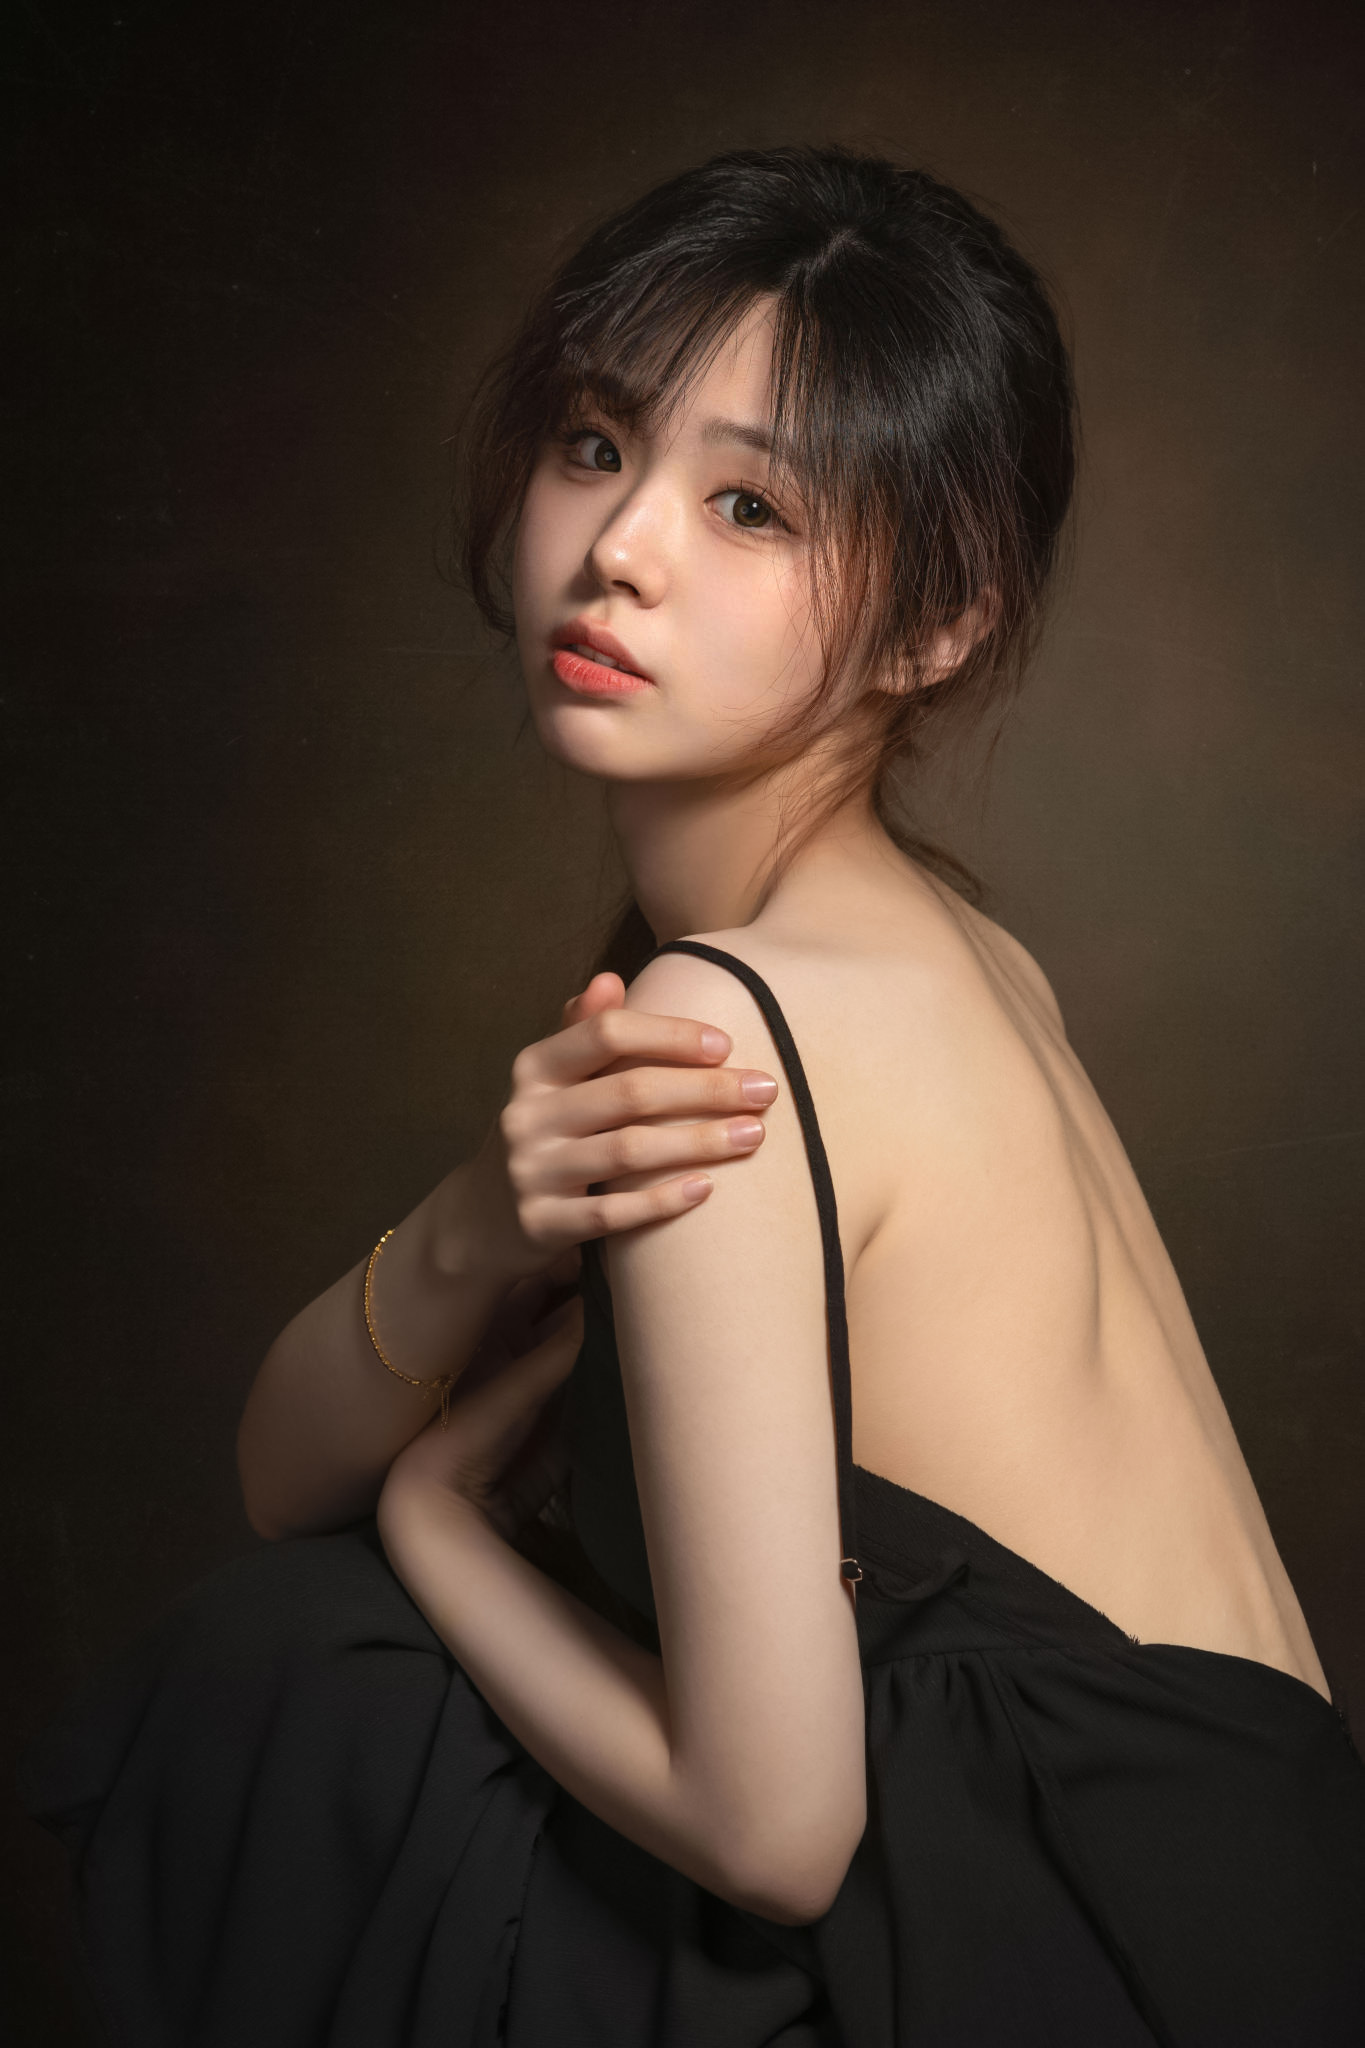 Lee Hu Women Asian Dark Hair Dress Black Clothing Simple Background Eyeliner 1365x2048